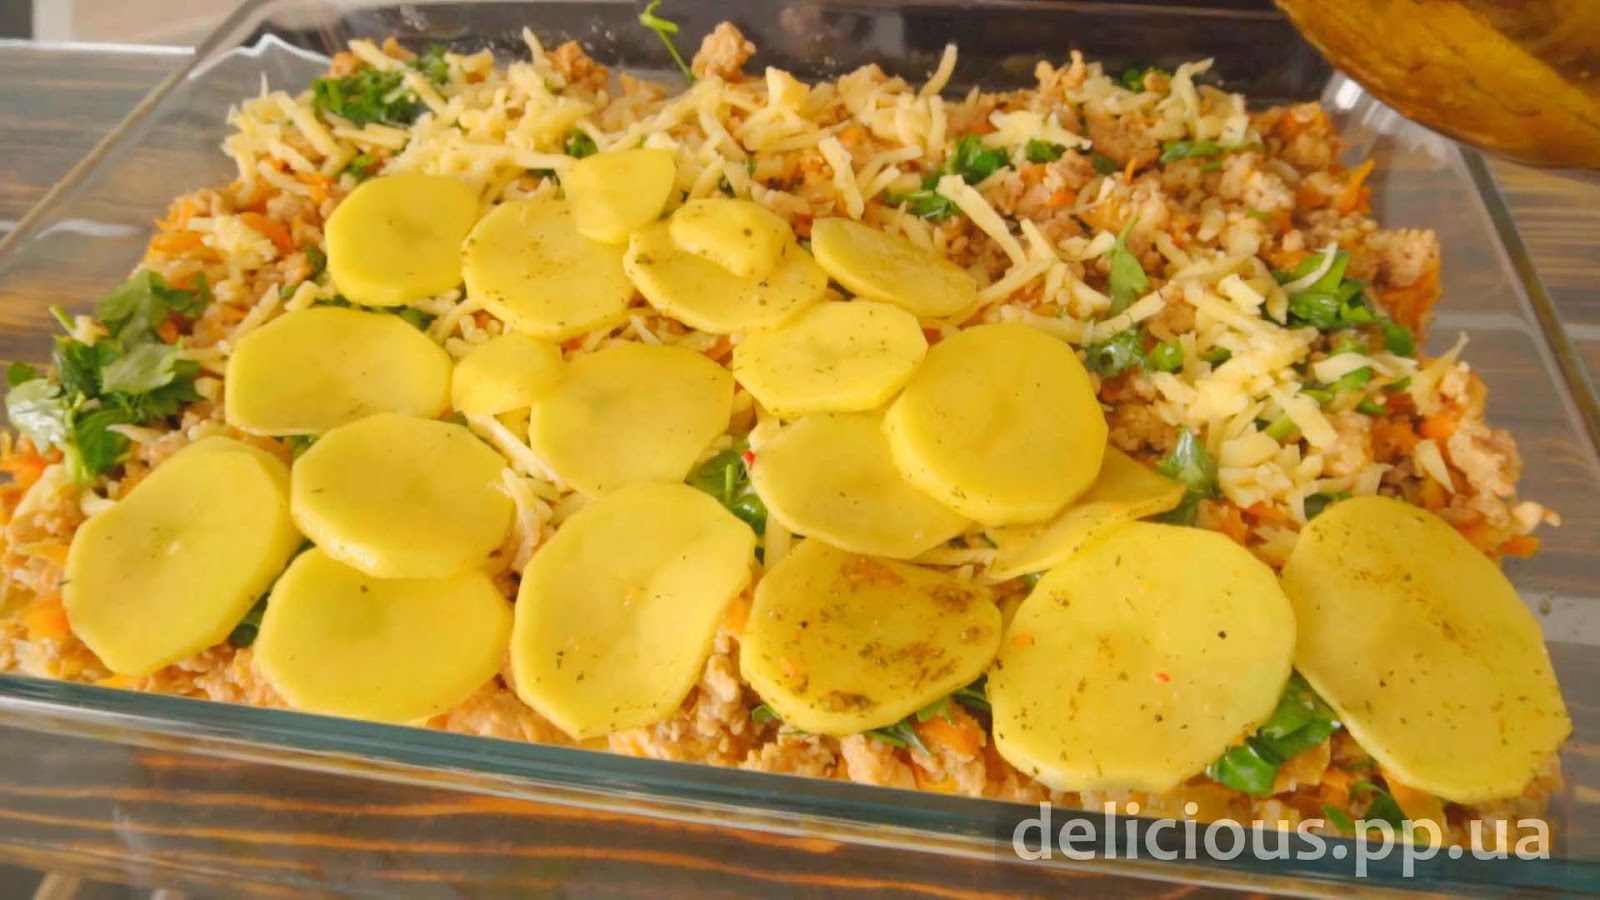 Фото приготовления рецепта: «Картофельная запеканка» - шаг №8